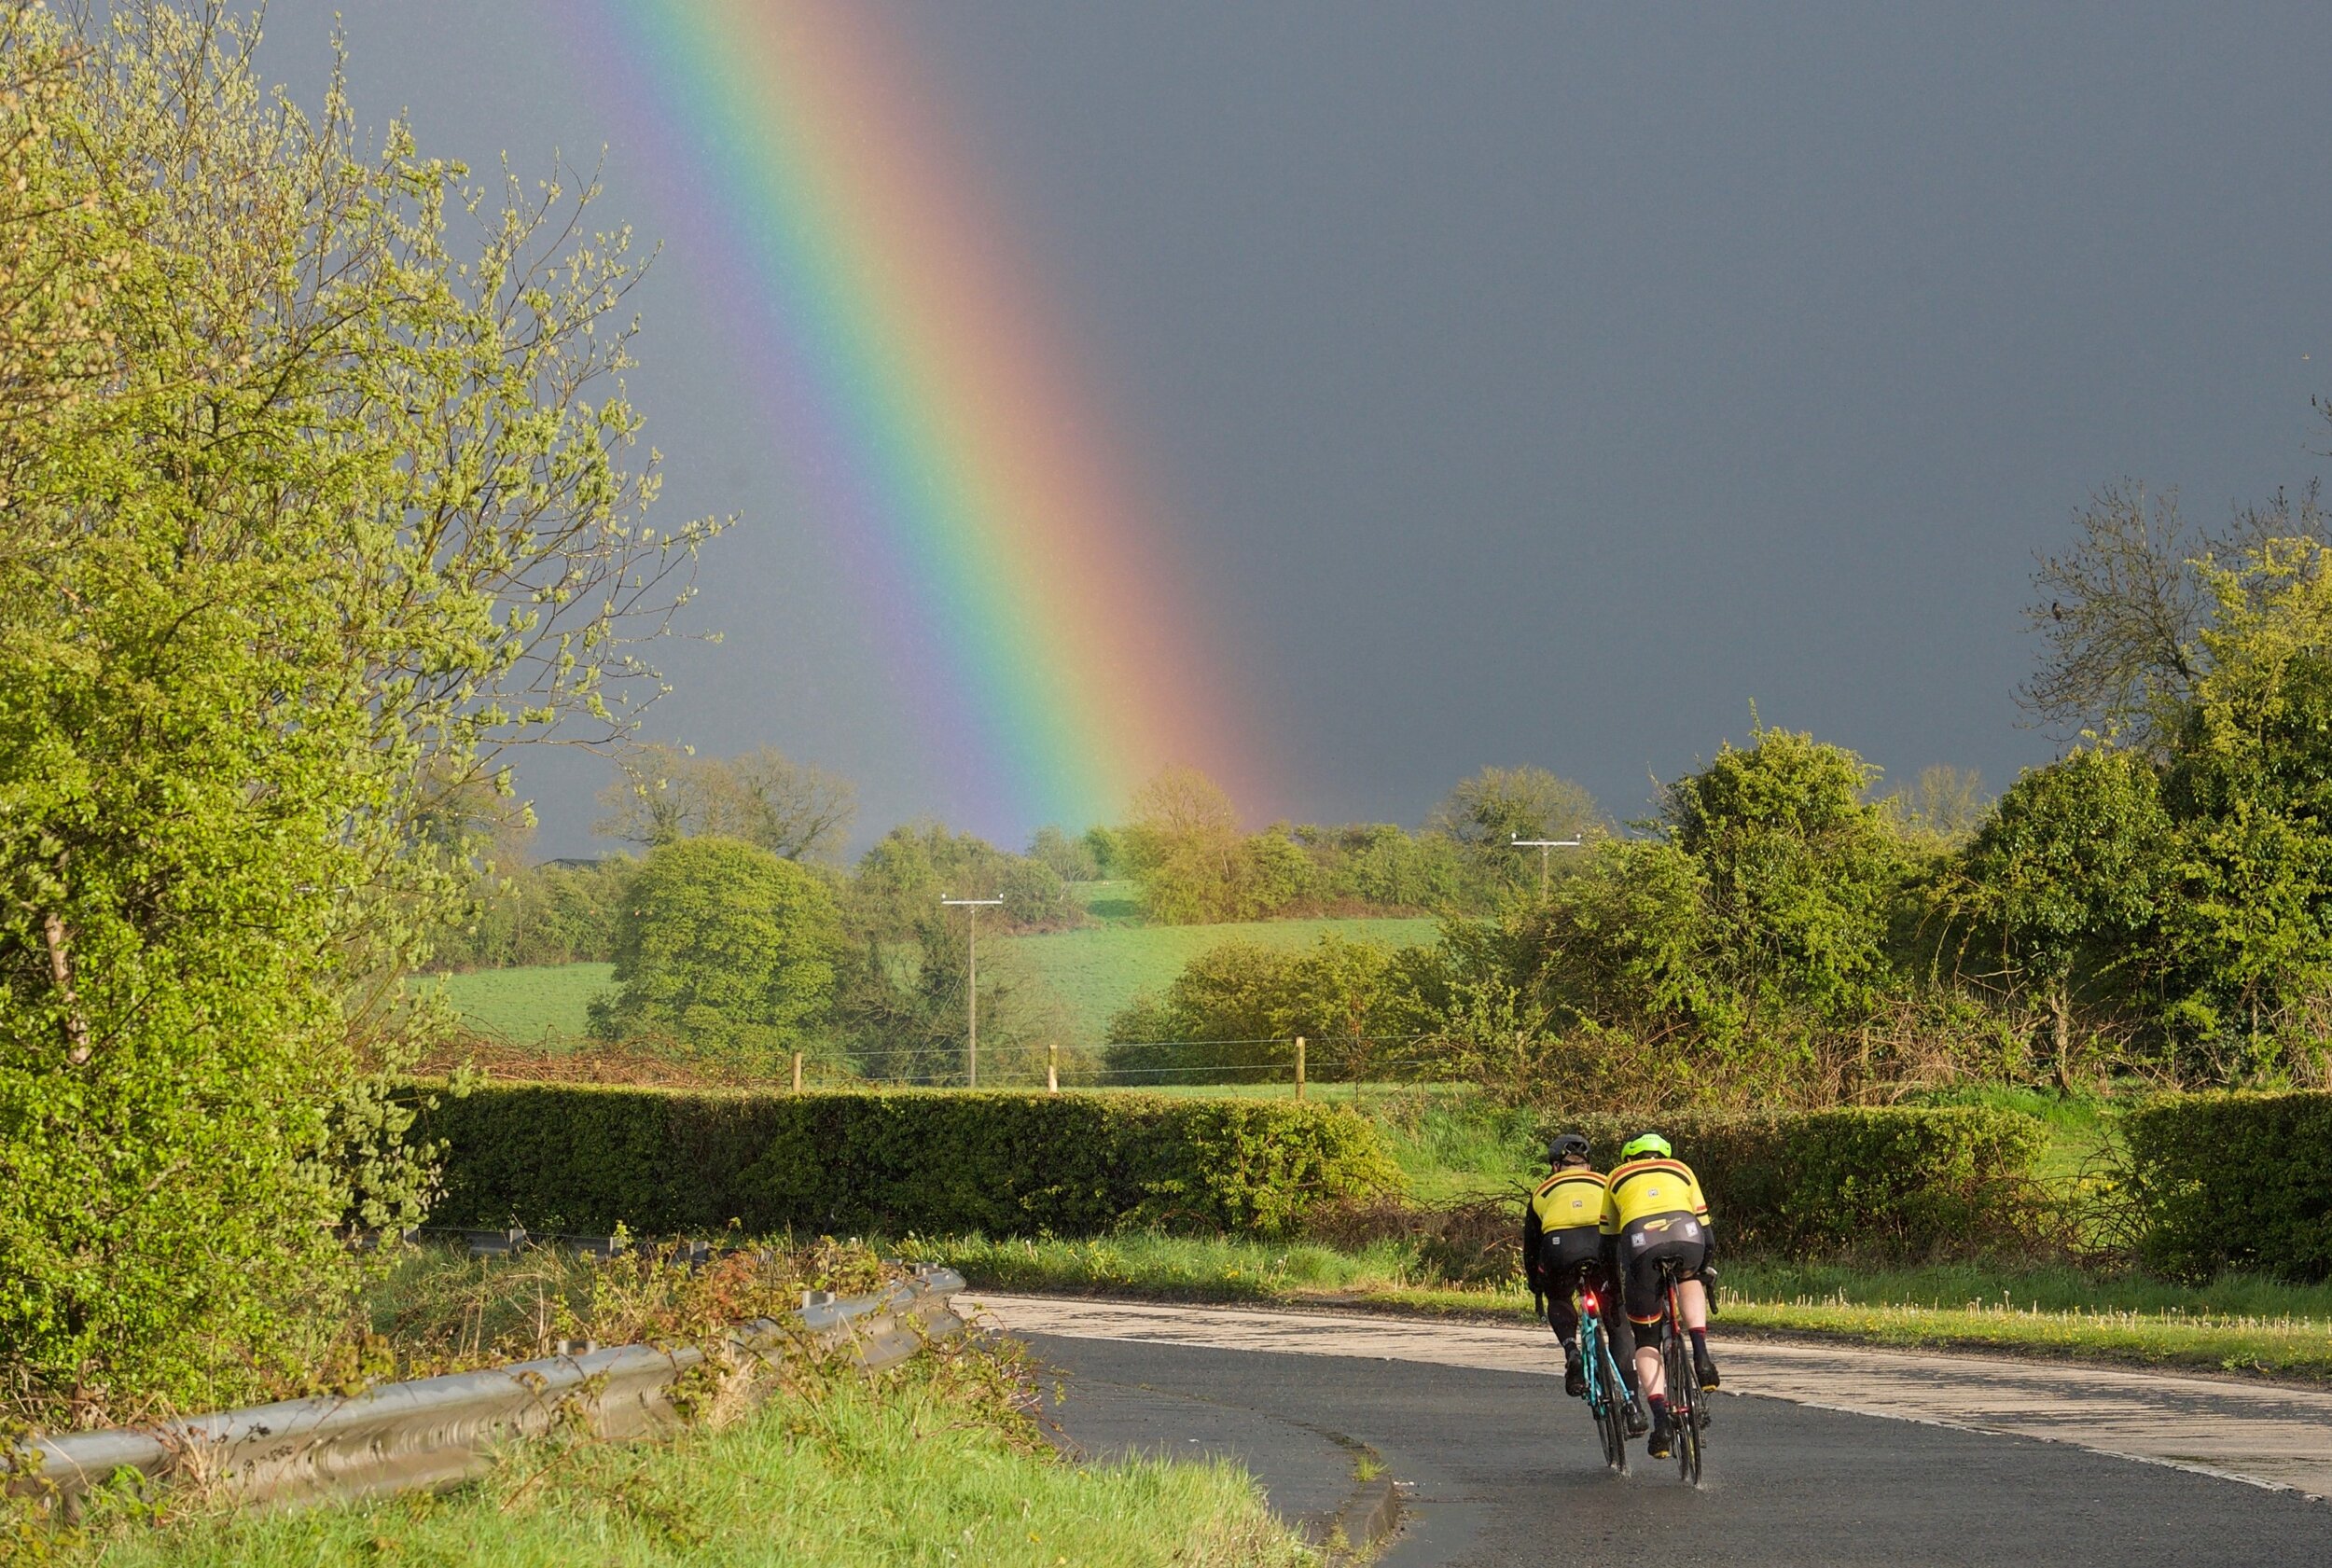 PHOTO 3 - Chasing rainbows